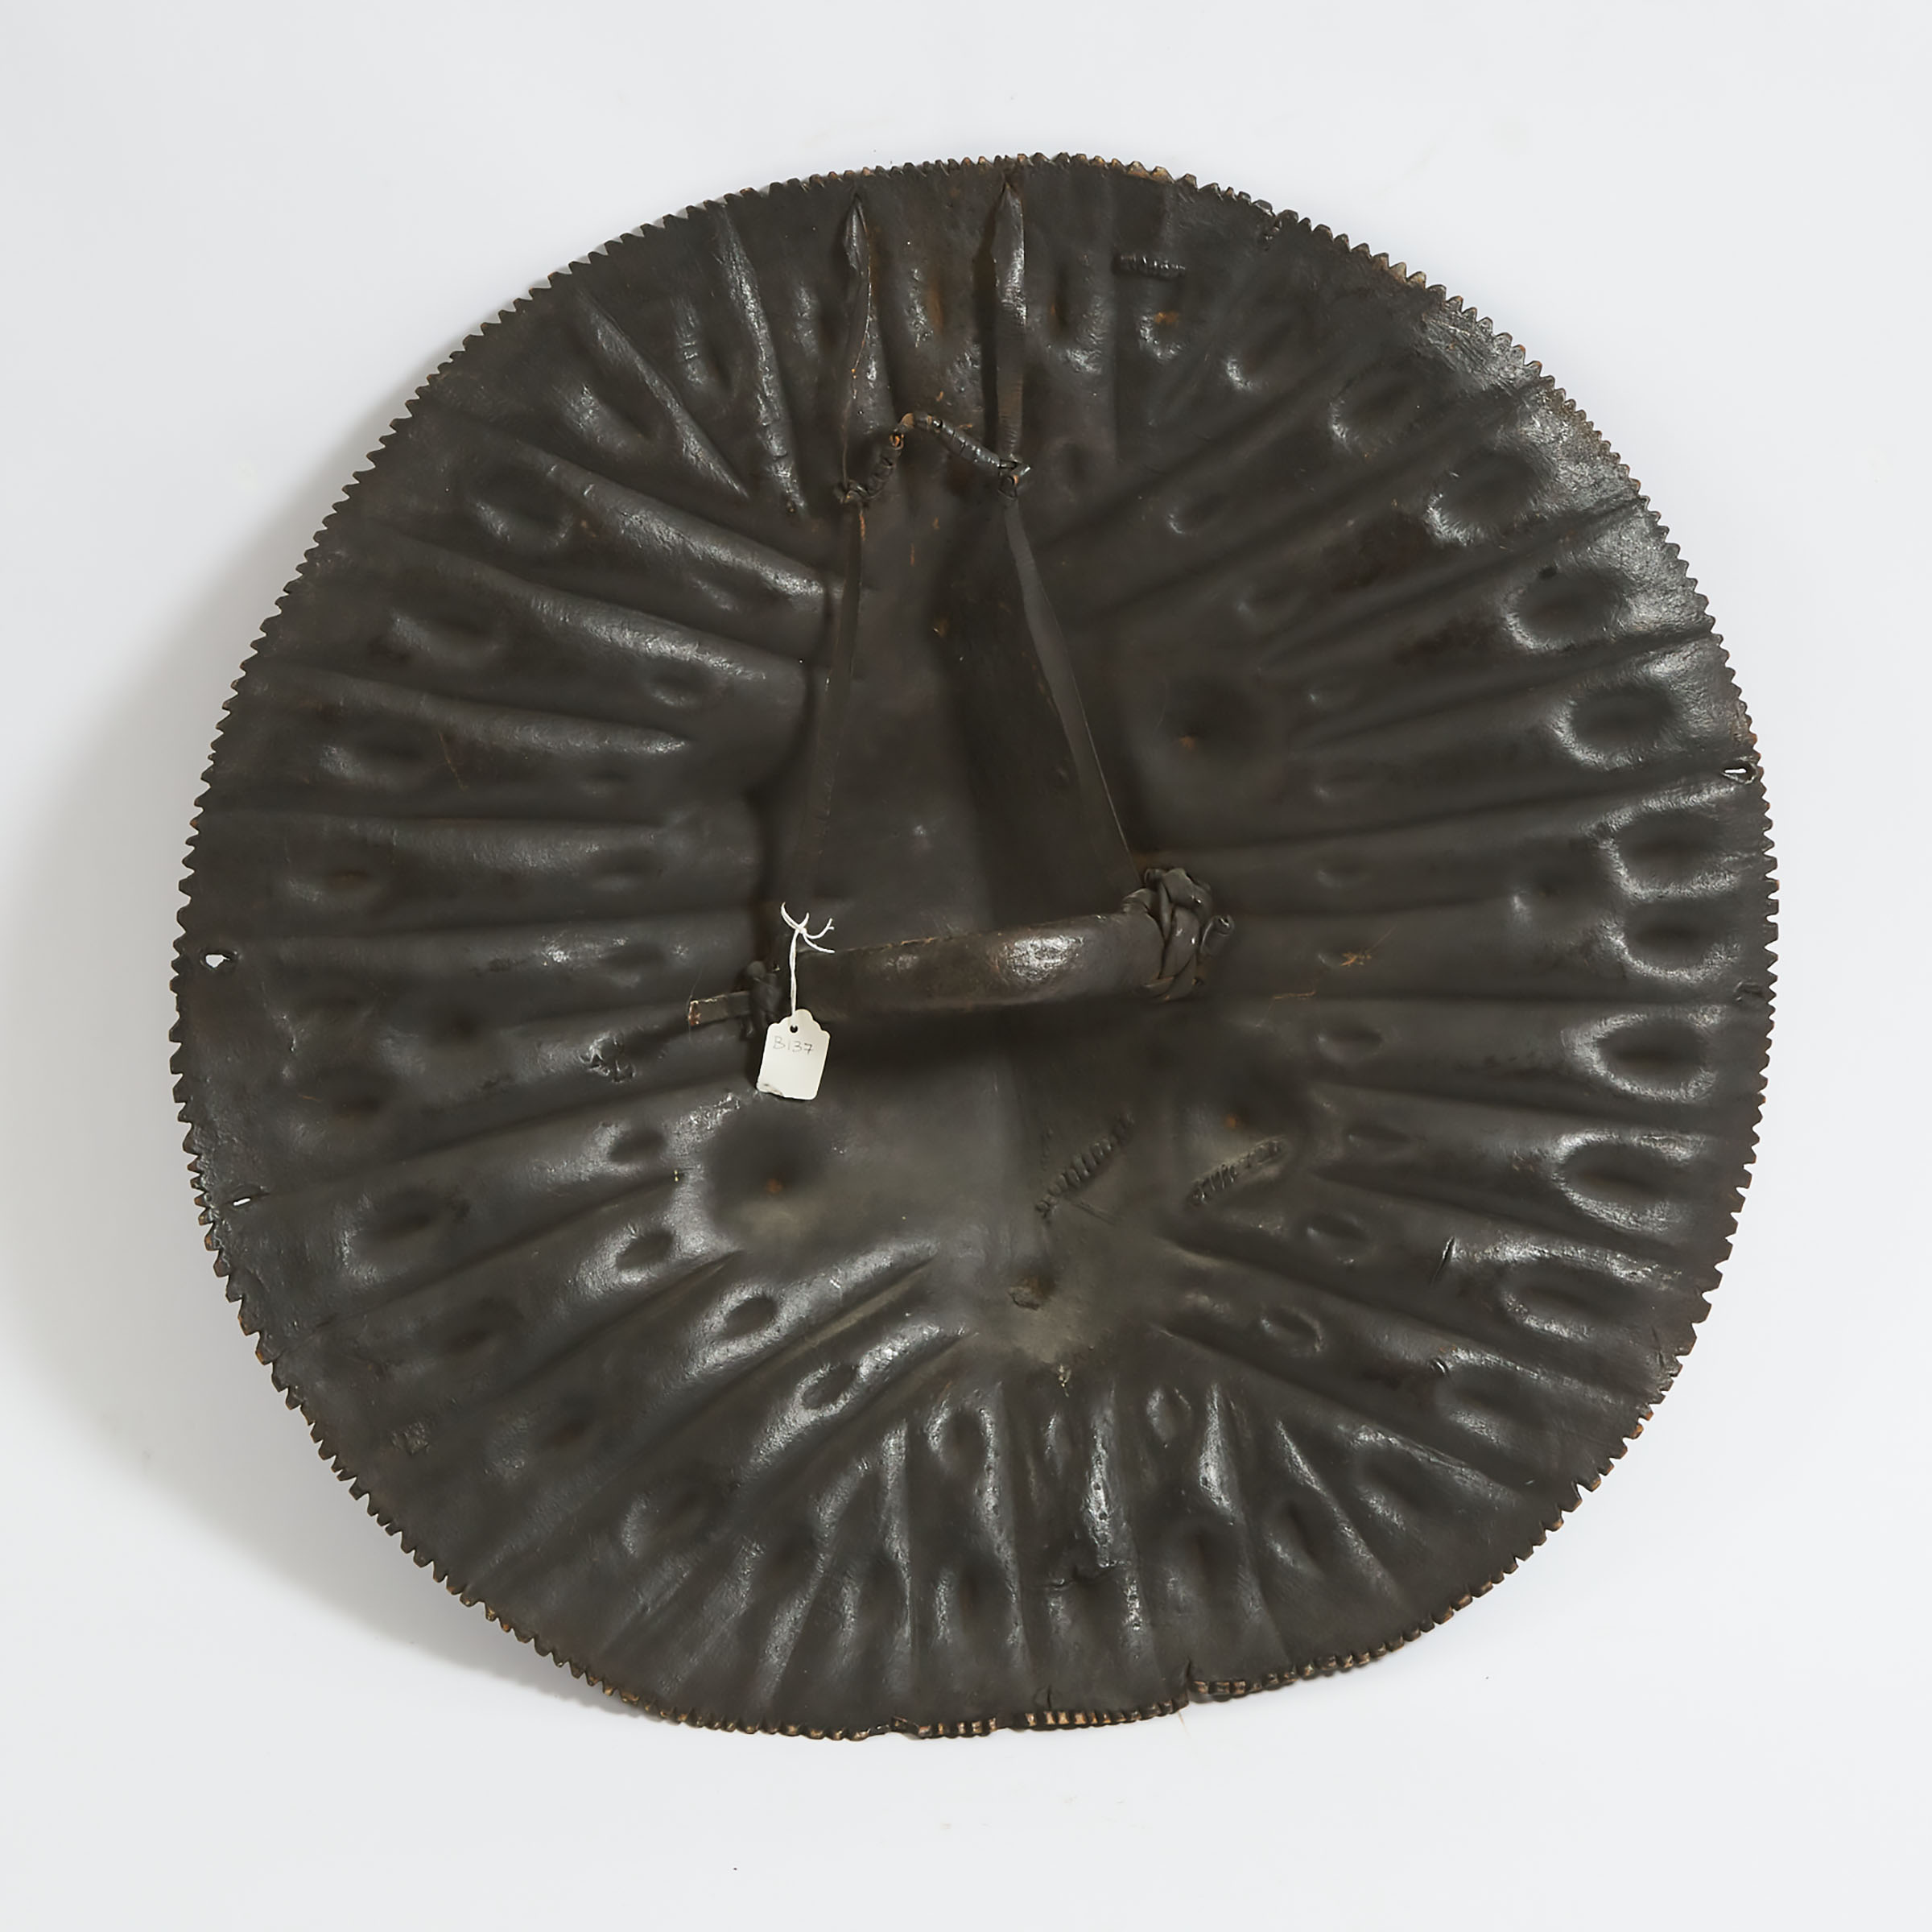 Oromo Shield, Ethiopia, early 20th century